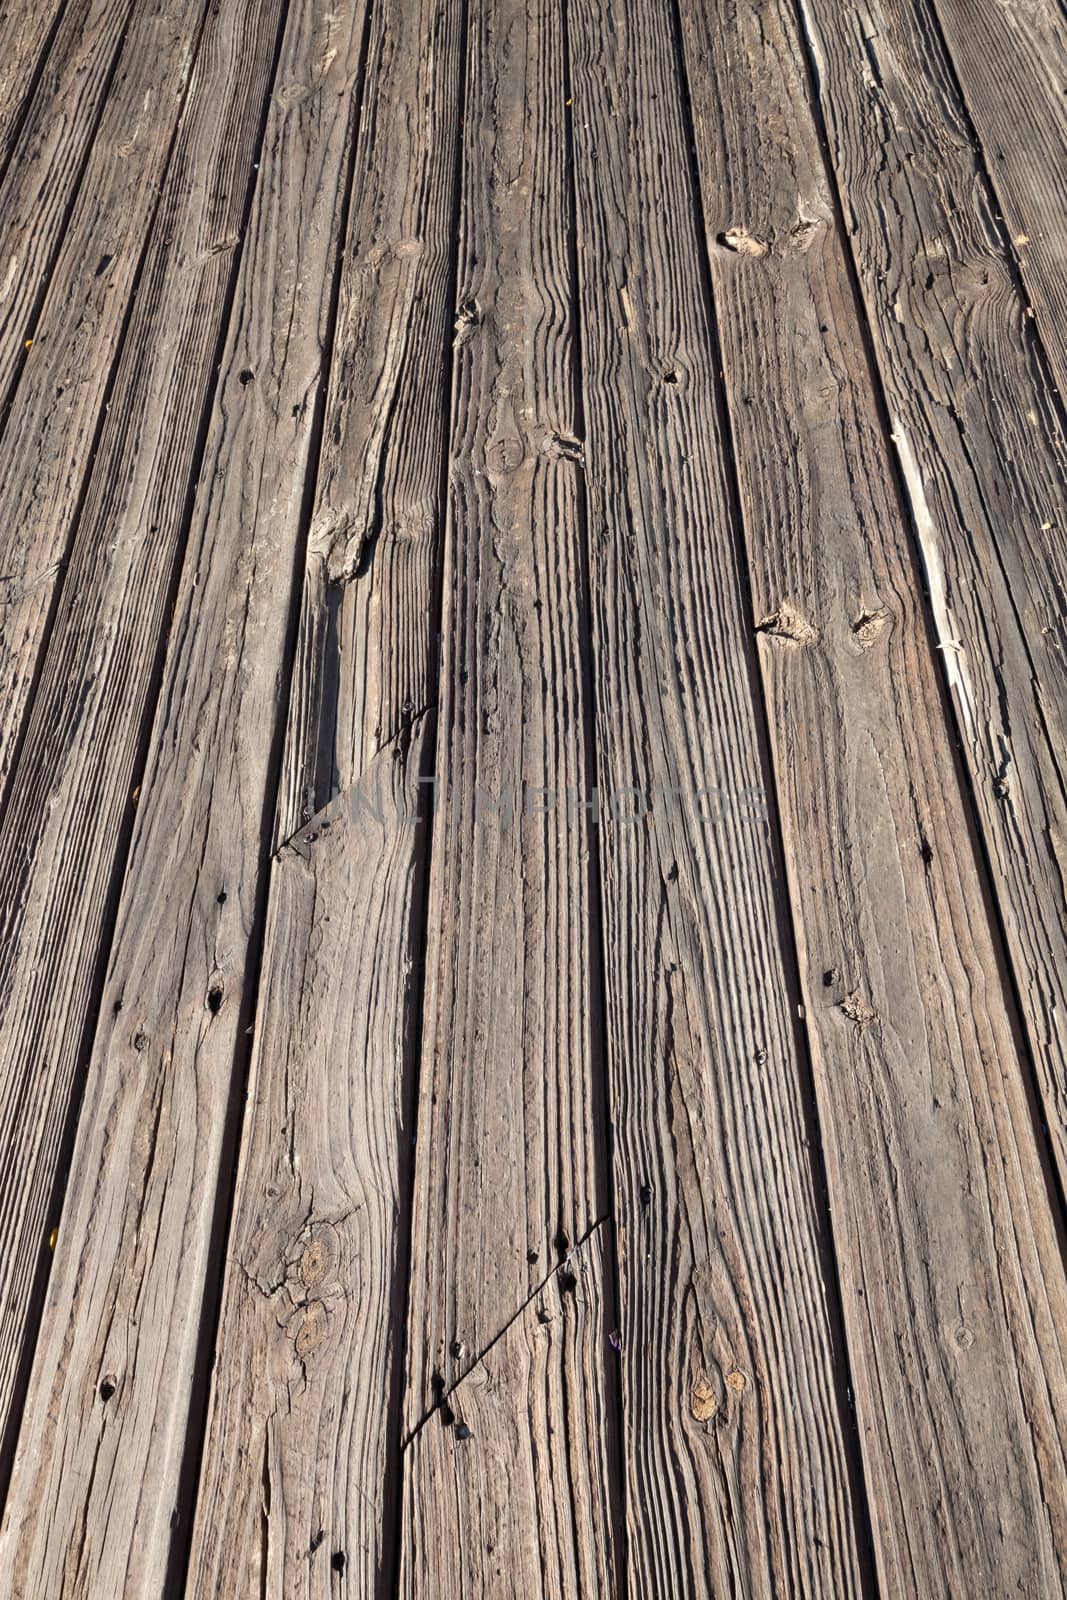 The old wooden floor texture